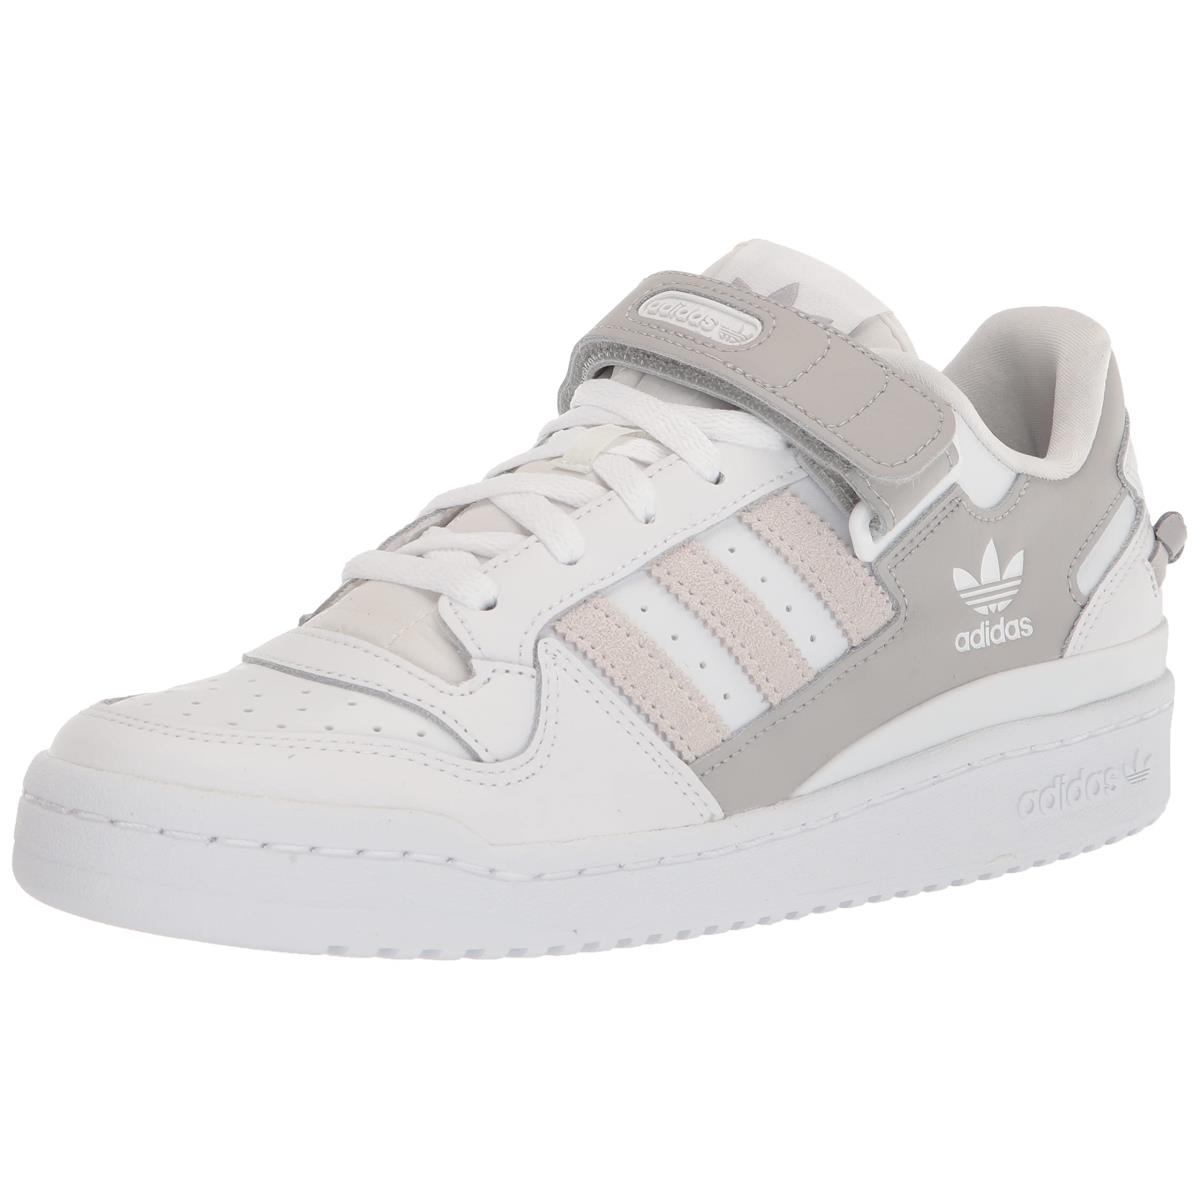 Adidas Men`s N-5923 Running Shoe White/White/Grey